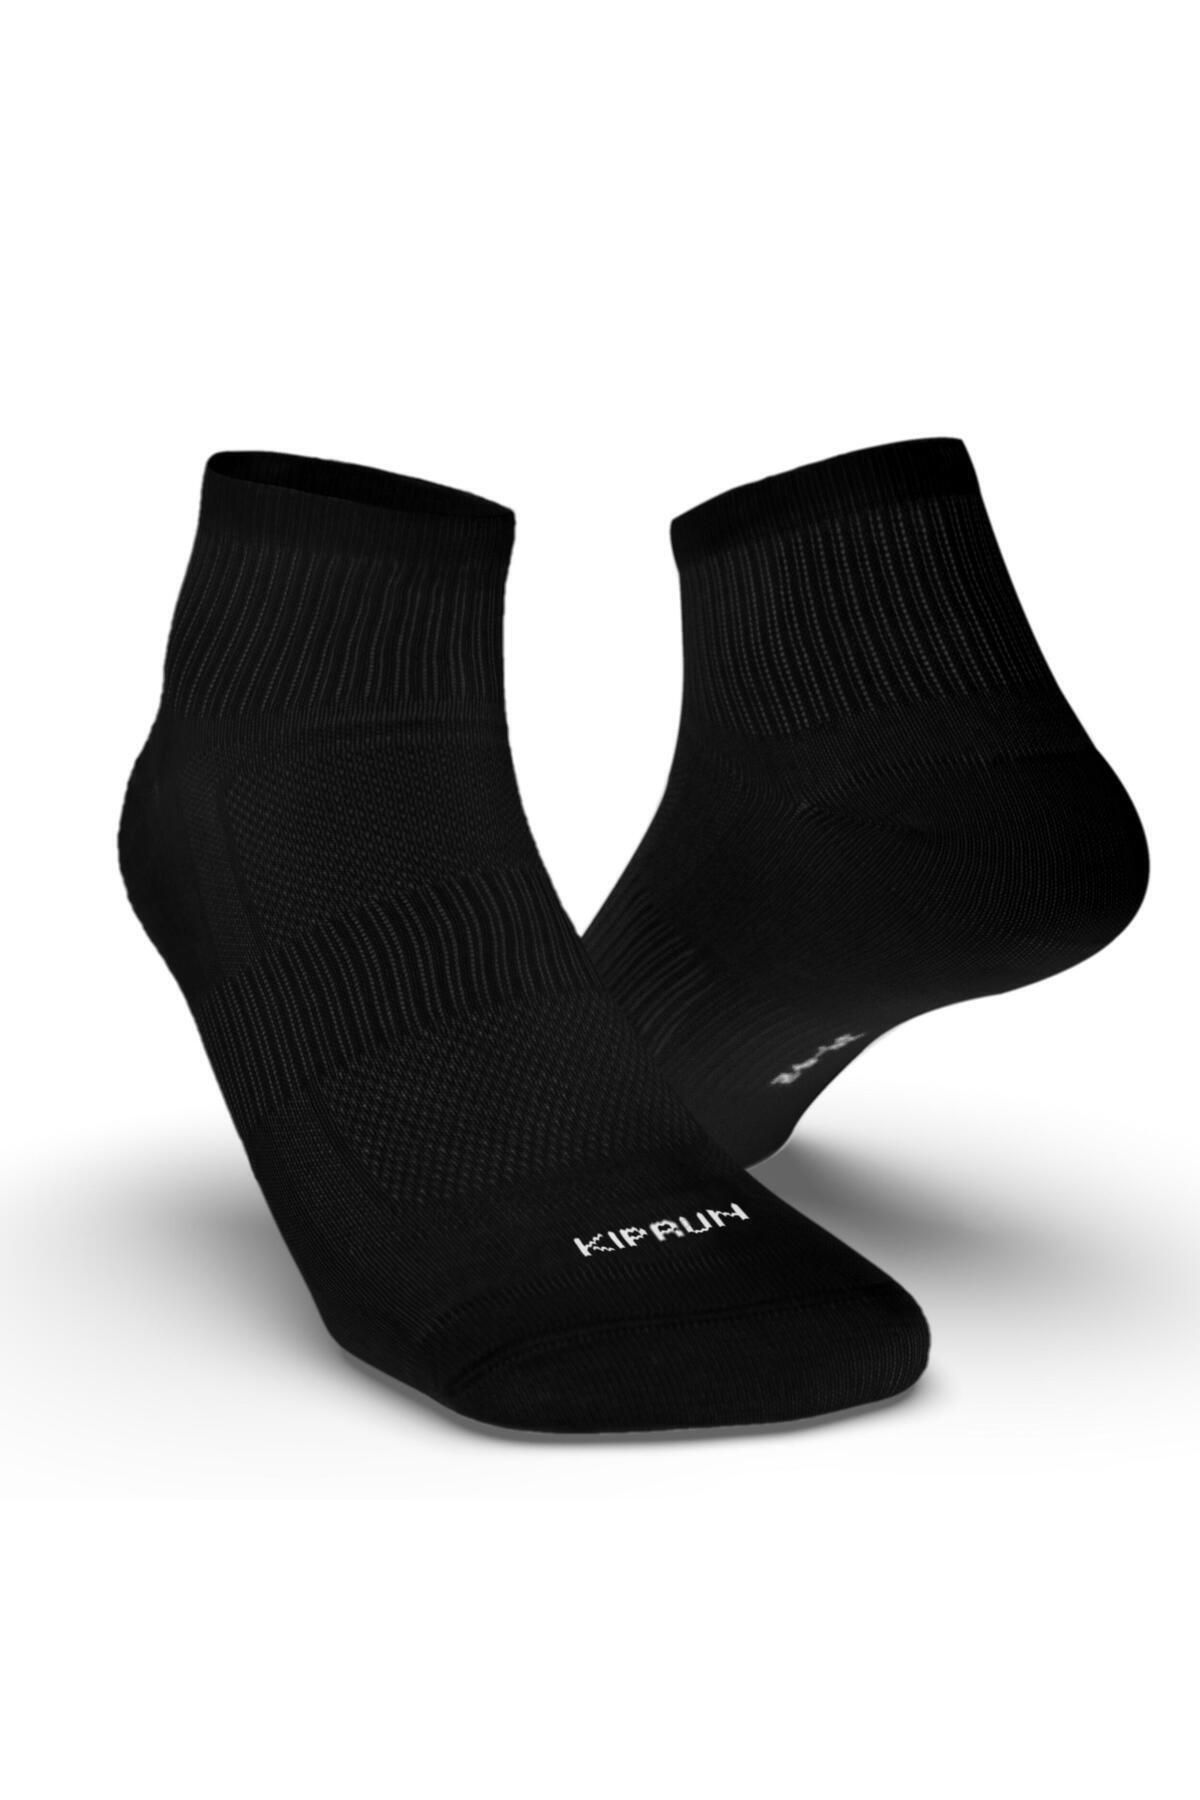 Decathlon Kiprun Siyah Çorap / Koşu - 3'li Paket - Run100